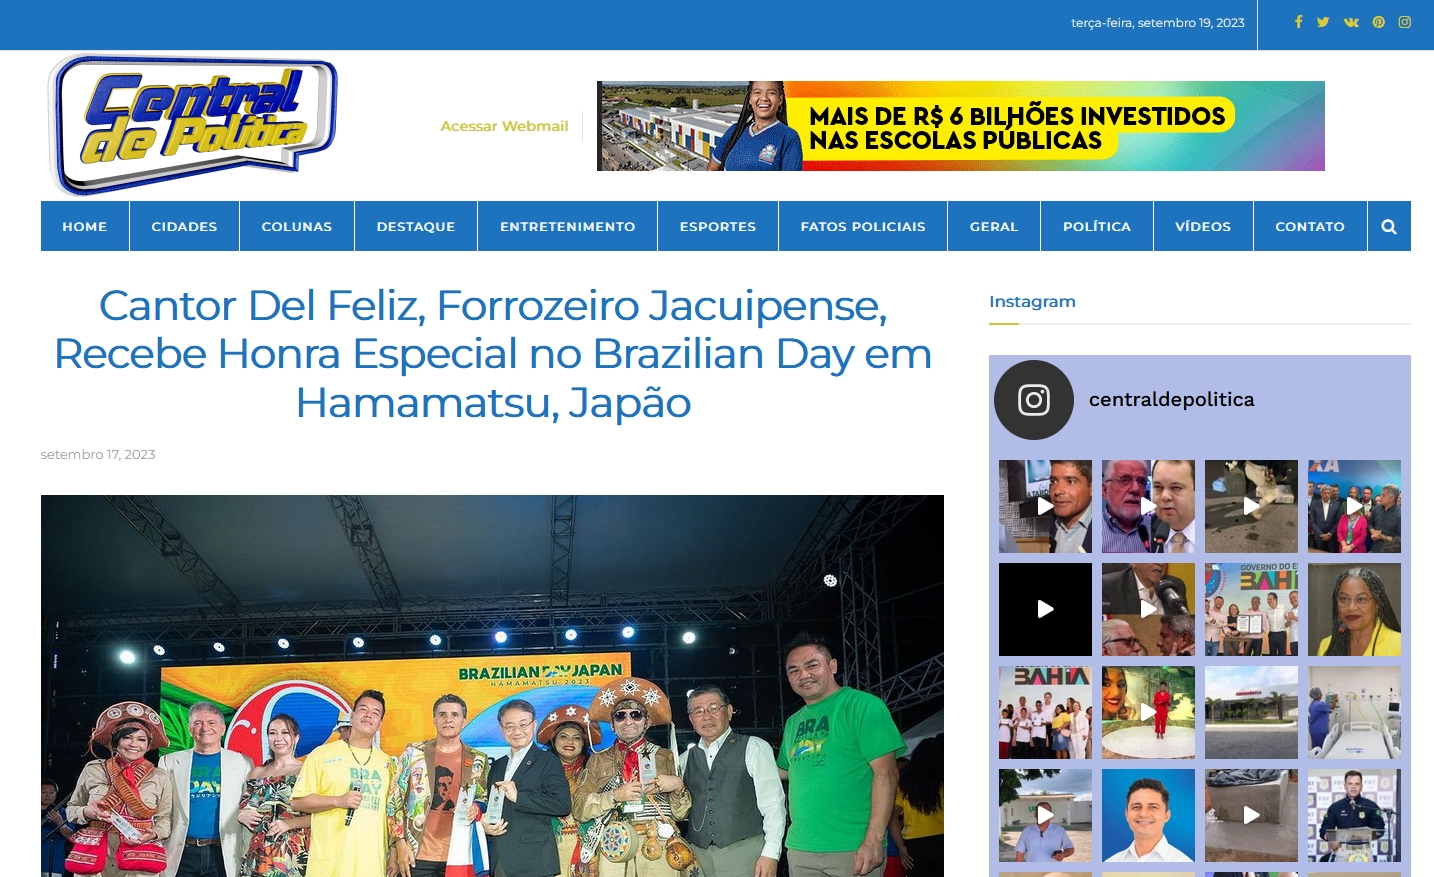 Cantor Del Feliz, Forrozeiro Jacuipense, Recebe Honra Especial no Brazilian Day em Hamamatsu, Japão